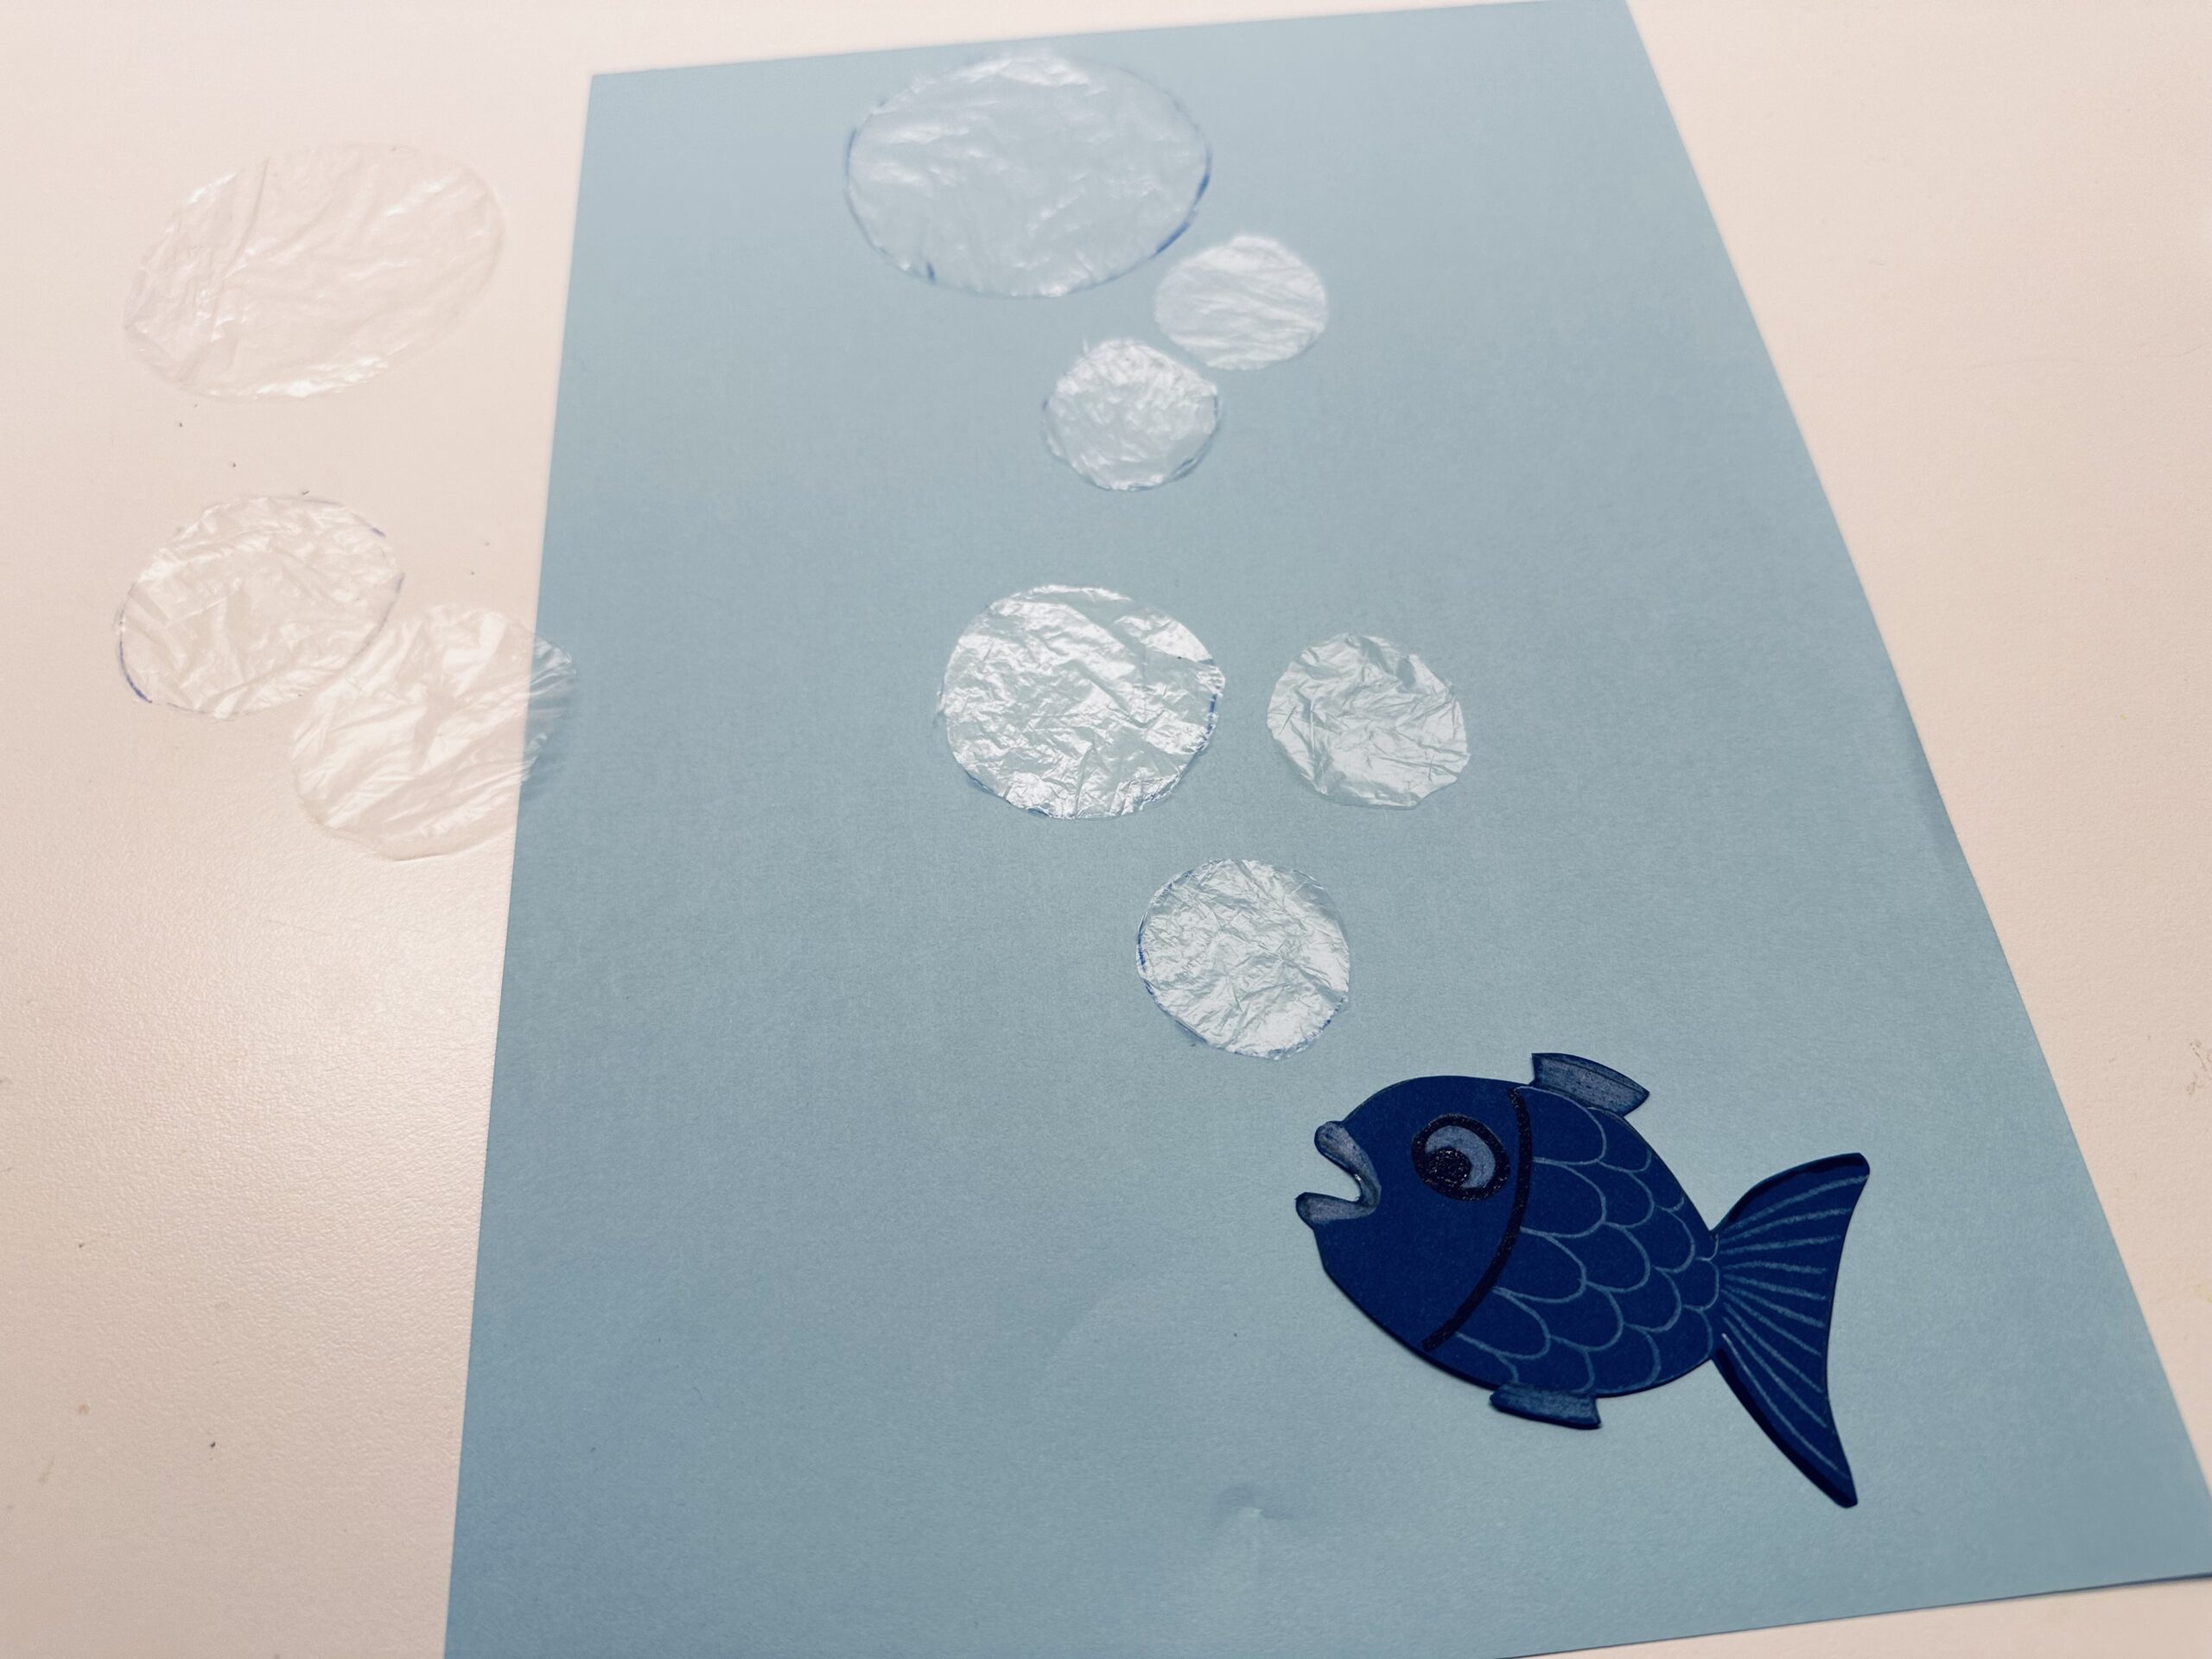 Bild zum Schritt 11 für das Bastel- und DIY-Abenteuer für Kinder: 'Legt den fertigen Fisch auf euer blaues Papier und ordnet...'